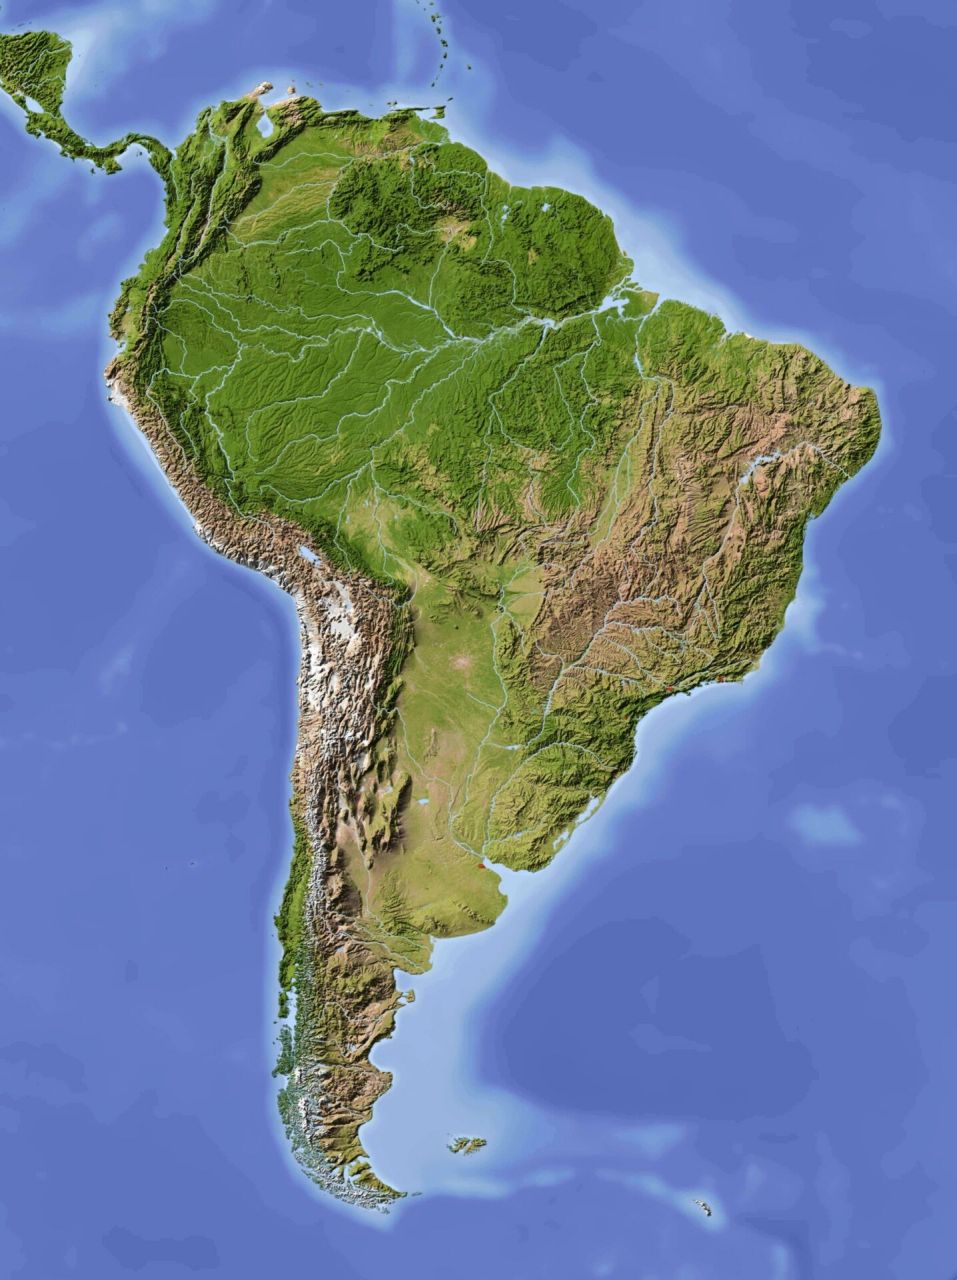 南美洲的地形特征图片